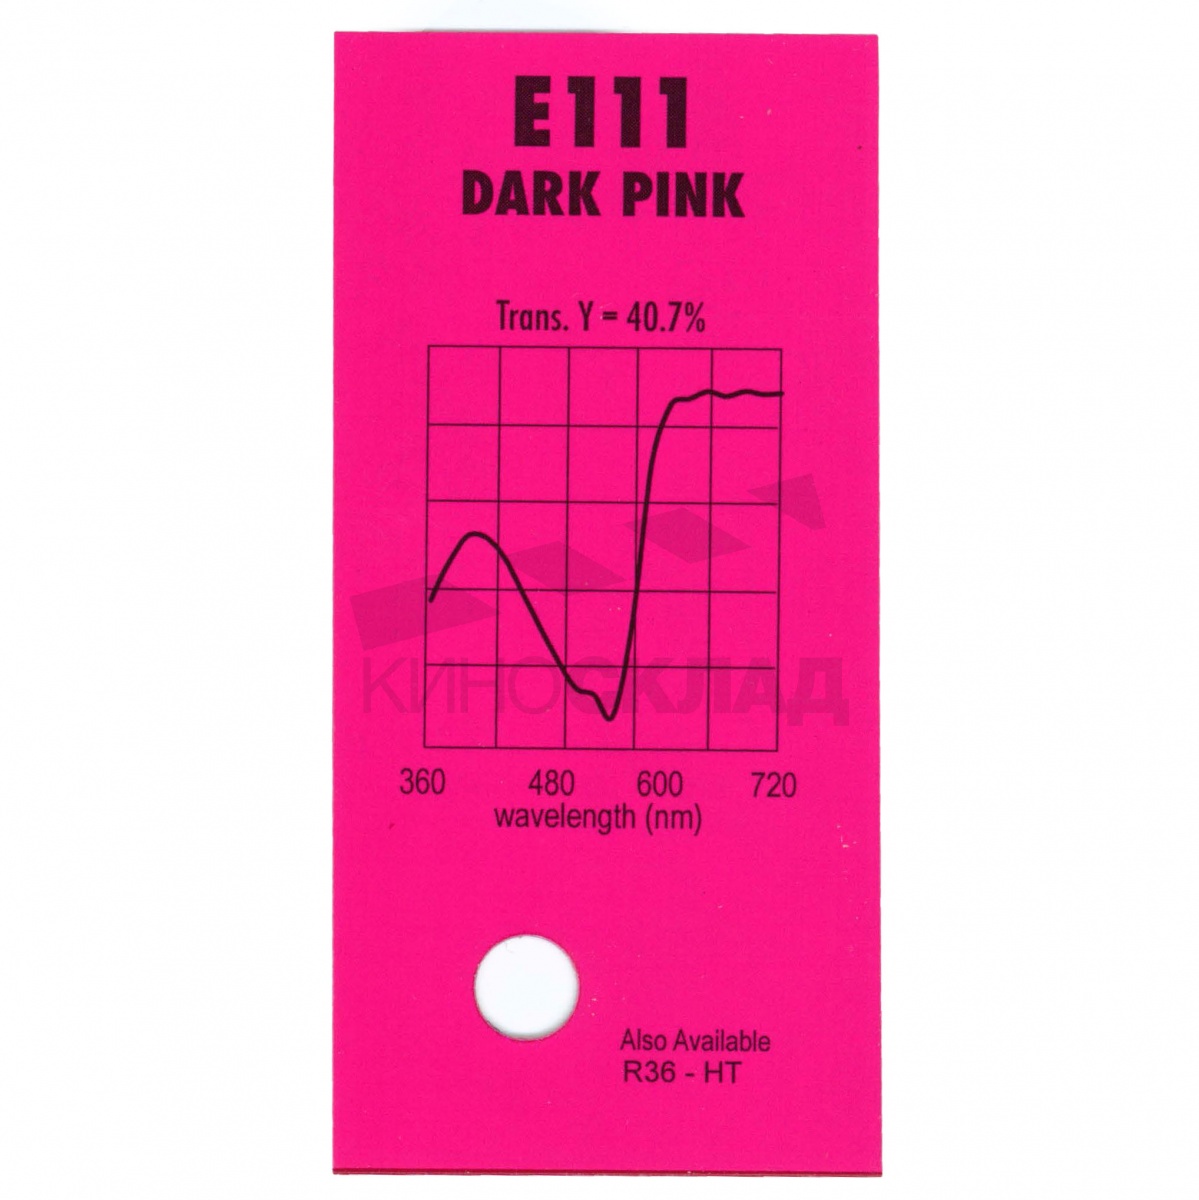 LEE Filters # 111 Dark Pink